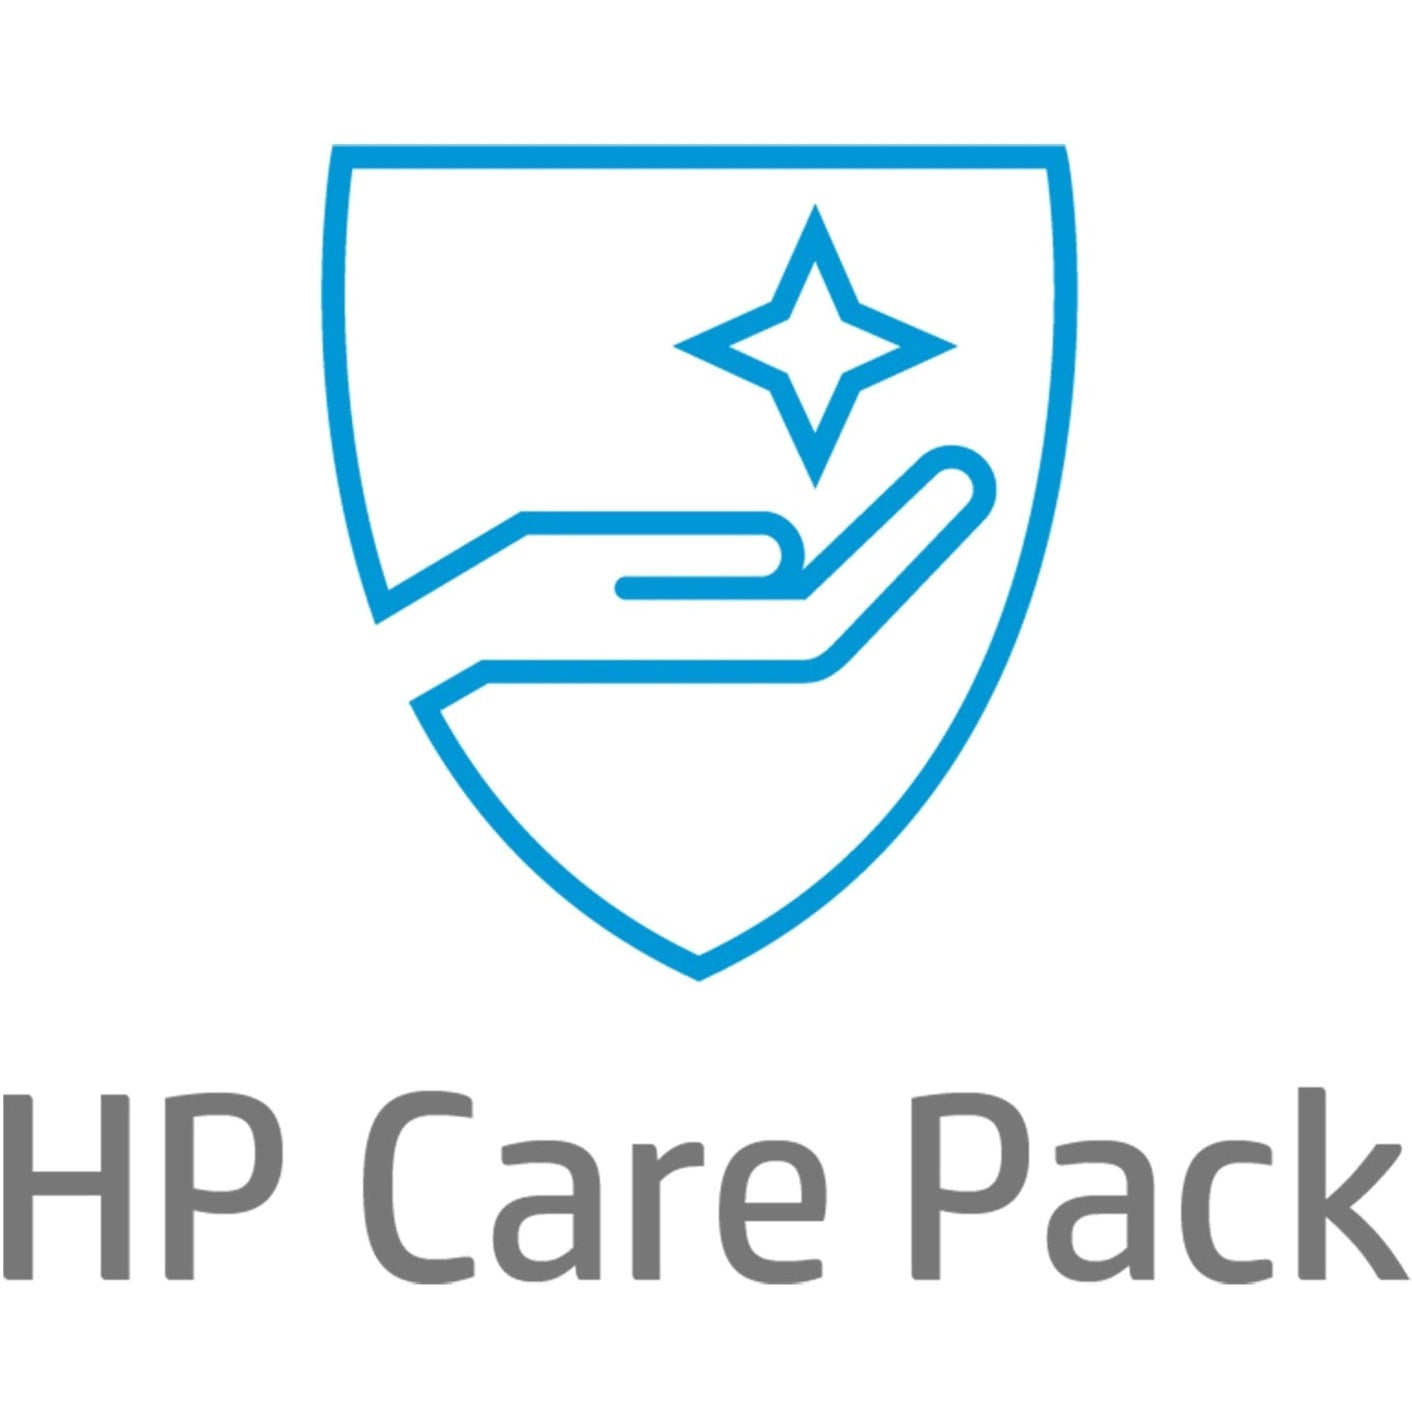 HP Care Pack - 5 Year - Service (UE334E)